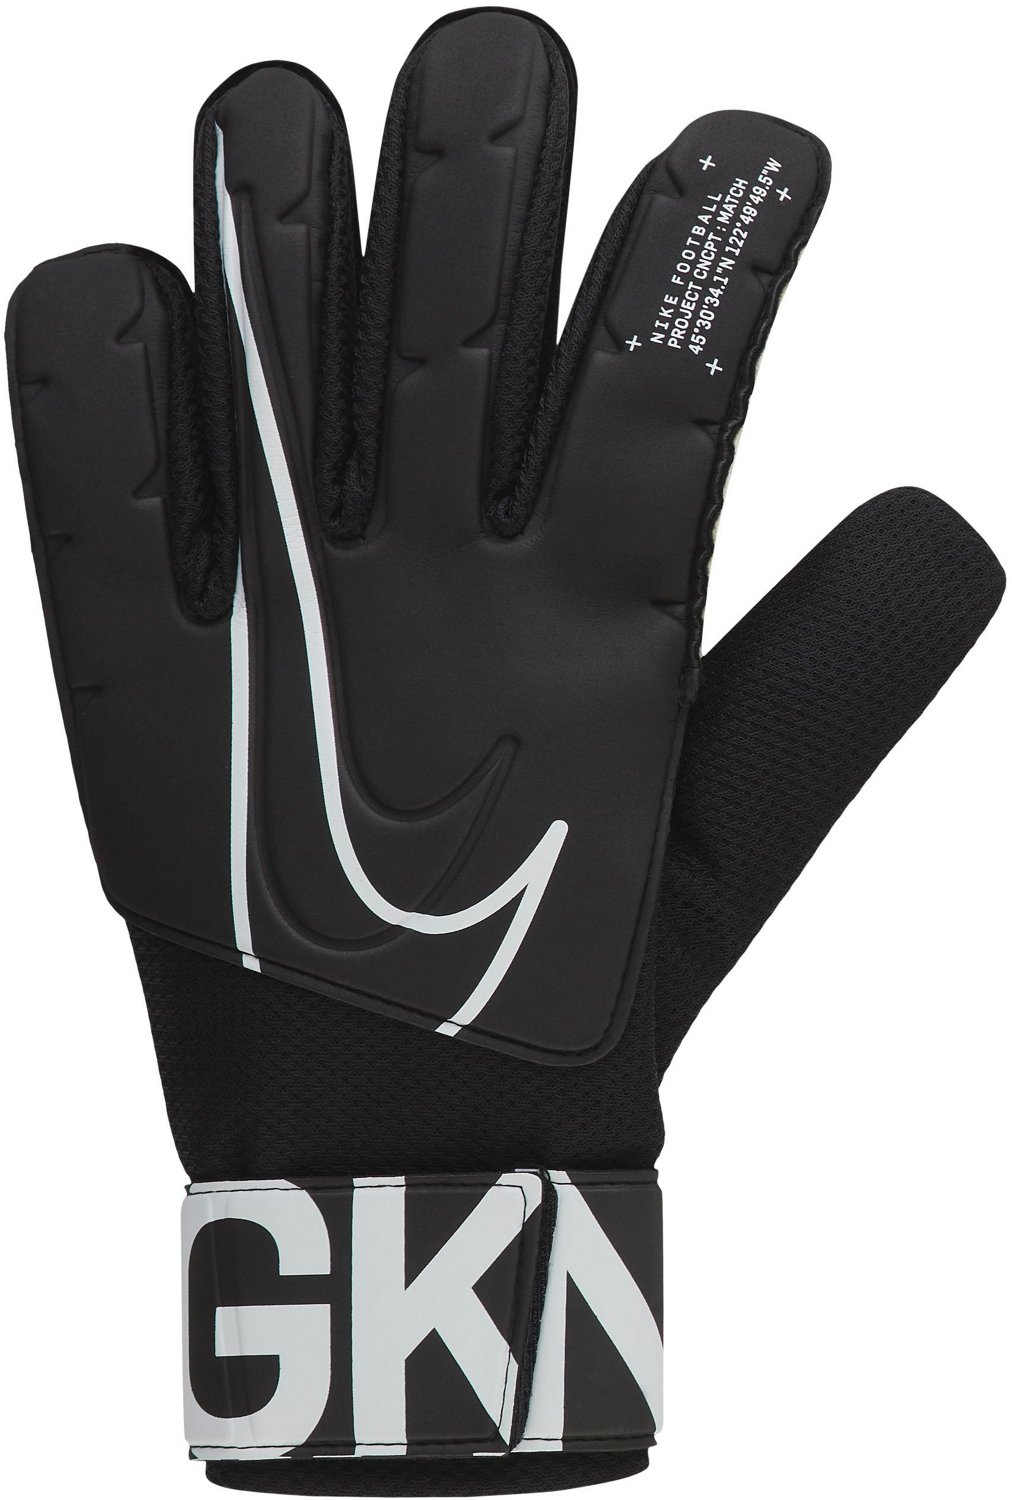 Soccer Goalie Gloves, Jerseys, \u0026 Gear 